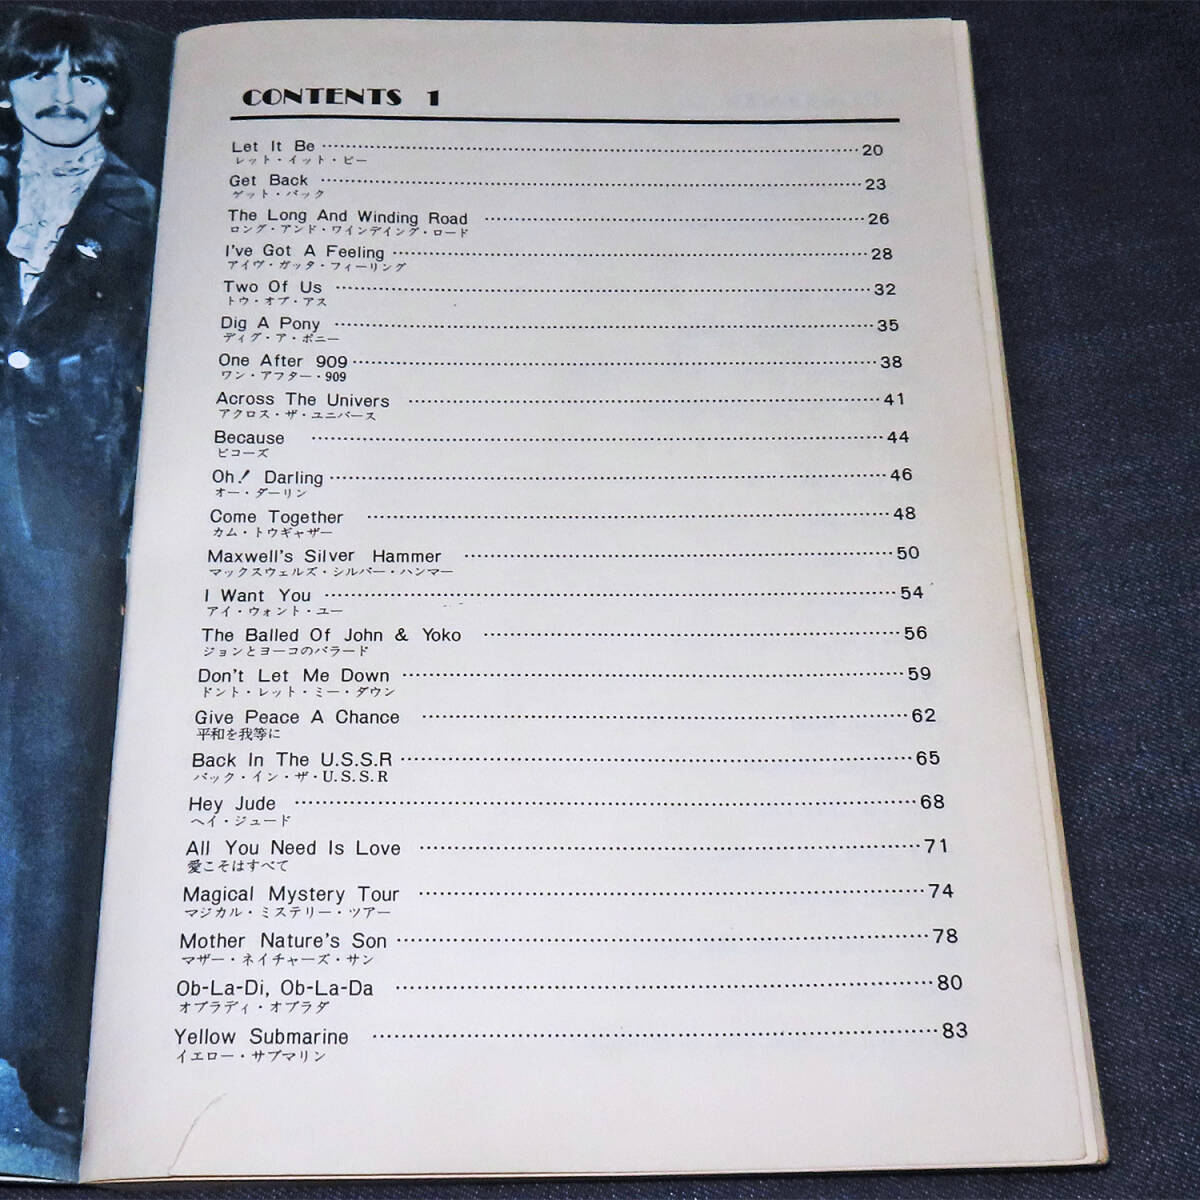  Beatles * хит * альбом {THE BEATLES HIT ALBUM} гитара код +mero.sinko- музыка 1973 год 